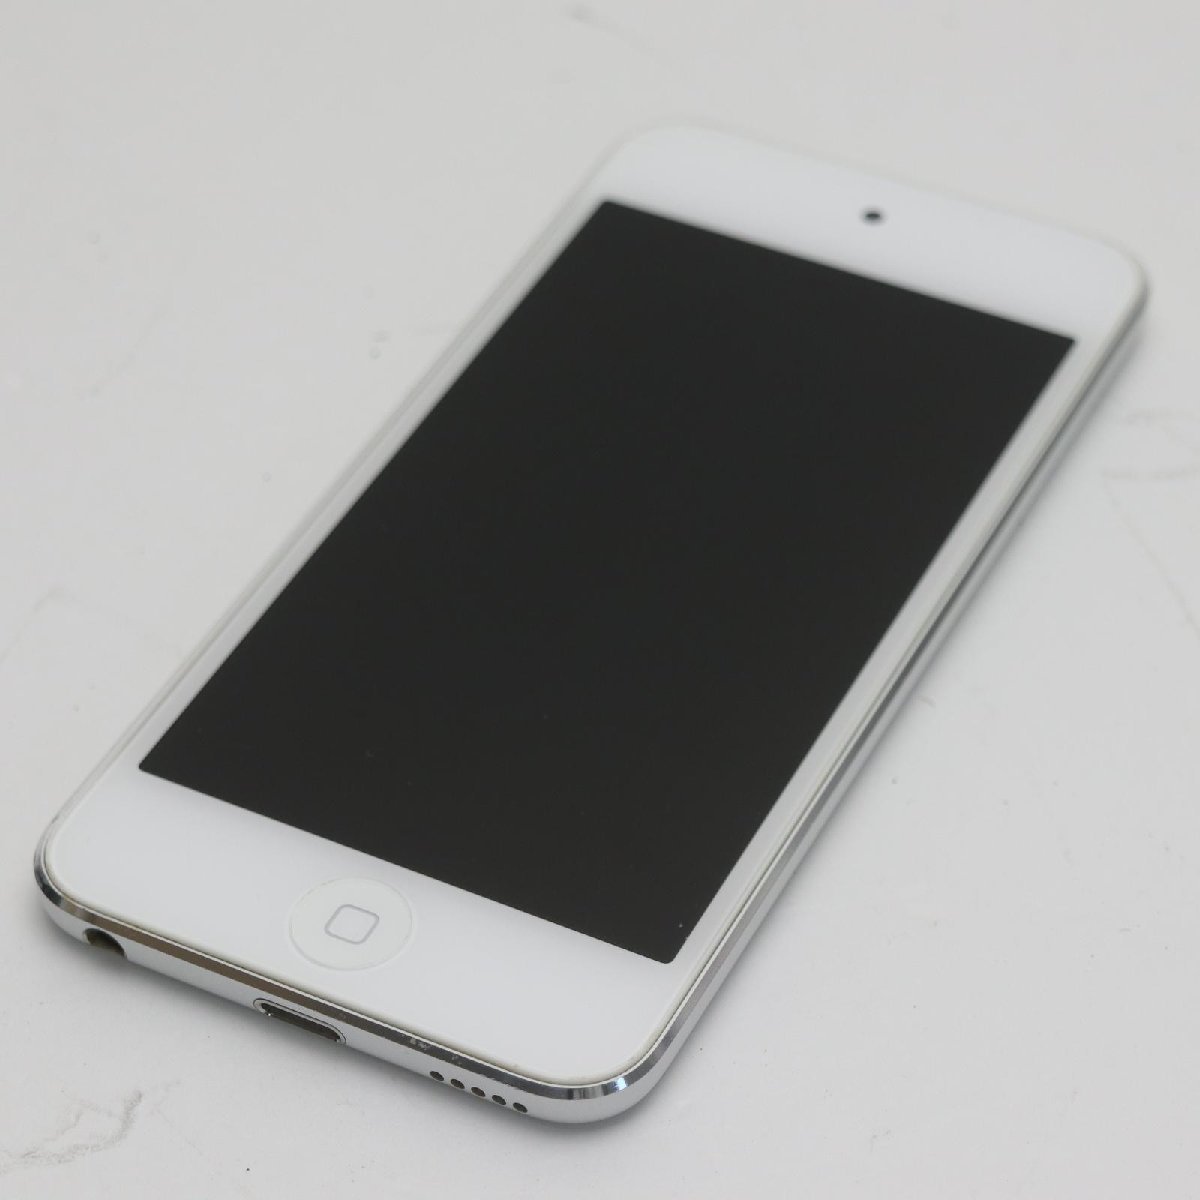 美品iPod touch 第5世代32GB ホワイト即日発送MD720J/A MD720J/A Apple